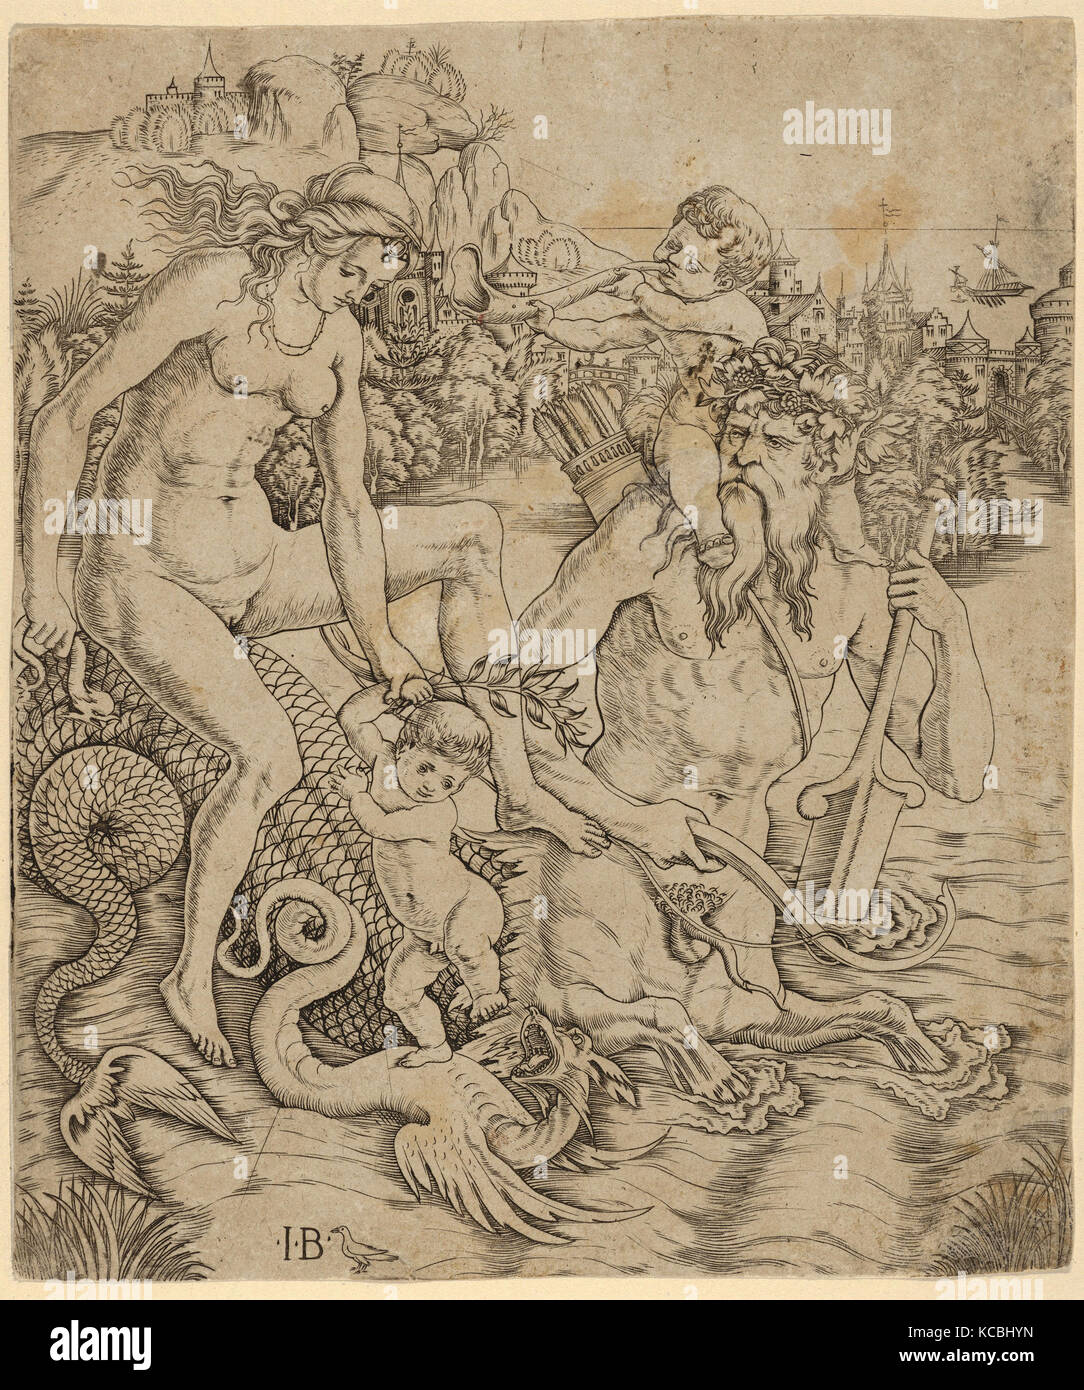 Dessins et gravures, un triton famille dans la mer, avec une mère et enfant assis sur le dos d'un mi-homme mi-monstre de mer Banque D'Images